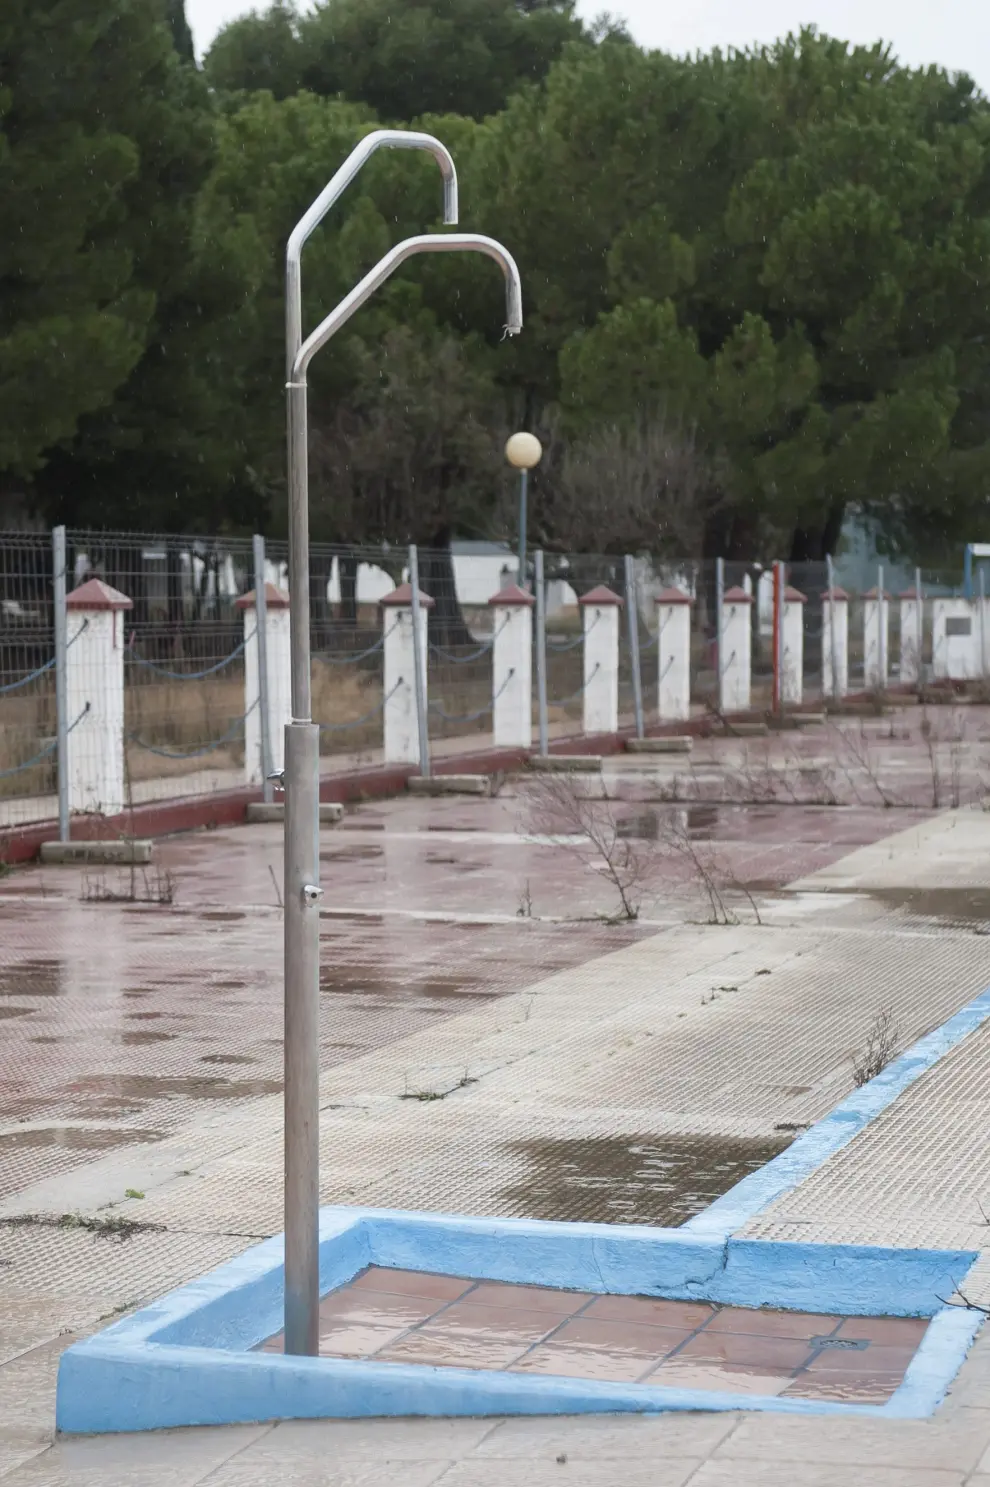 Abandono y vandalismo en el Parque Deportivo Ebro